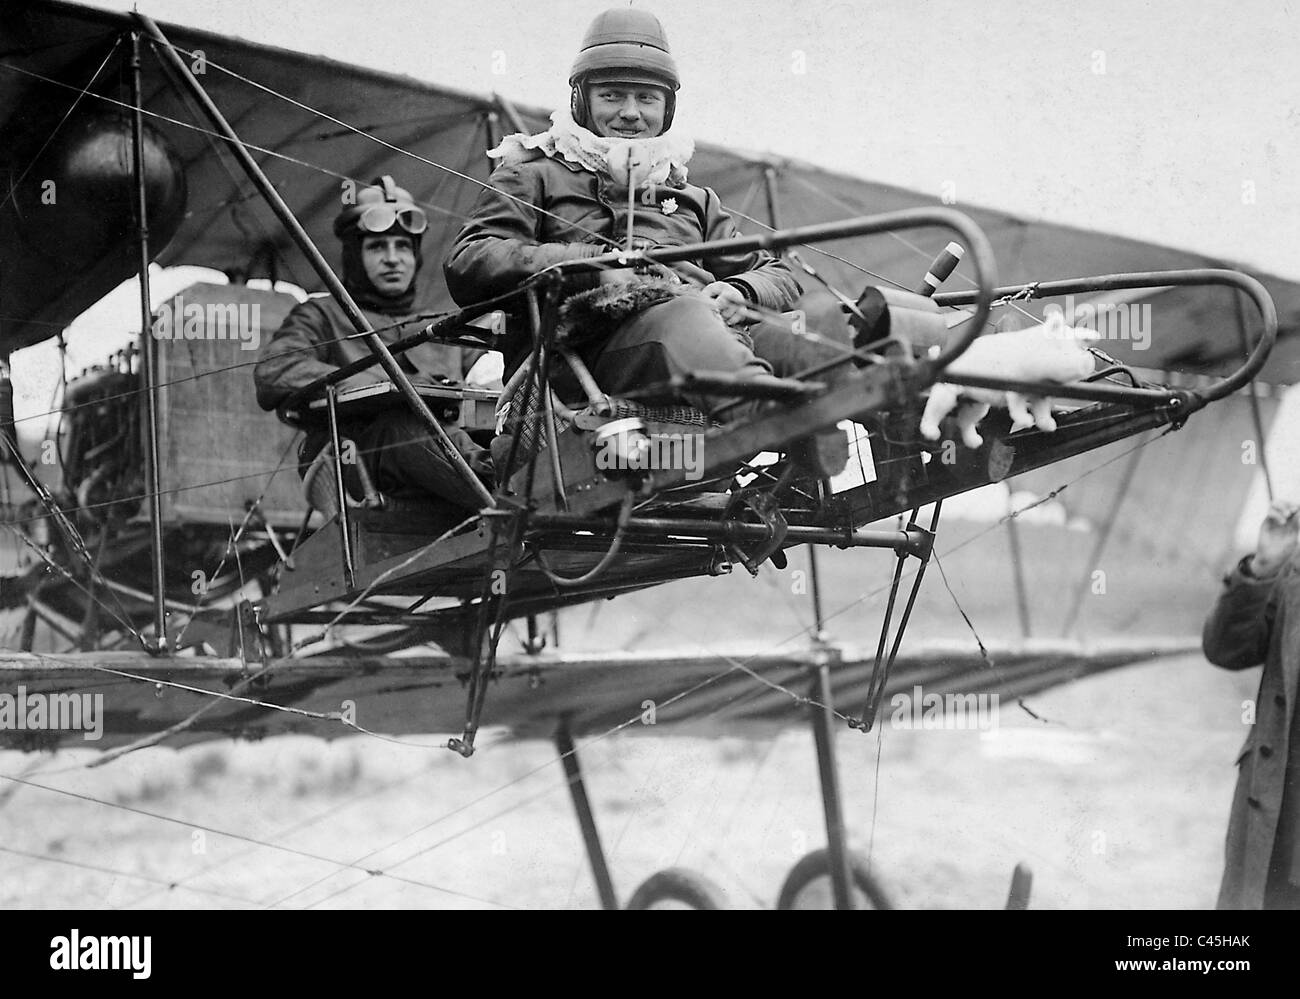 Anton Baierlein Otto dans son biplan, 1912 Banque D'Images